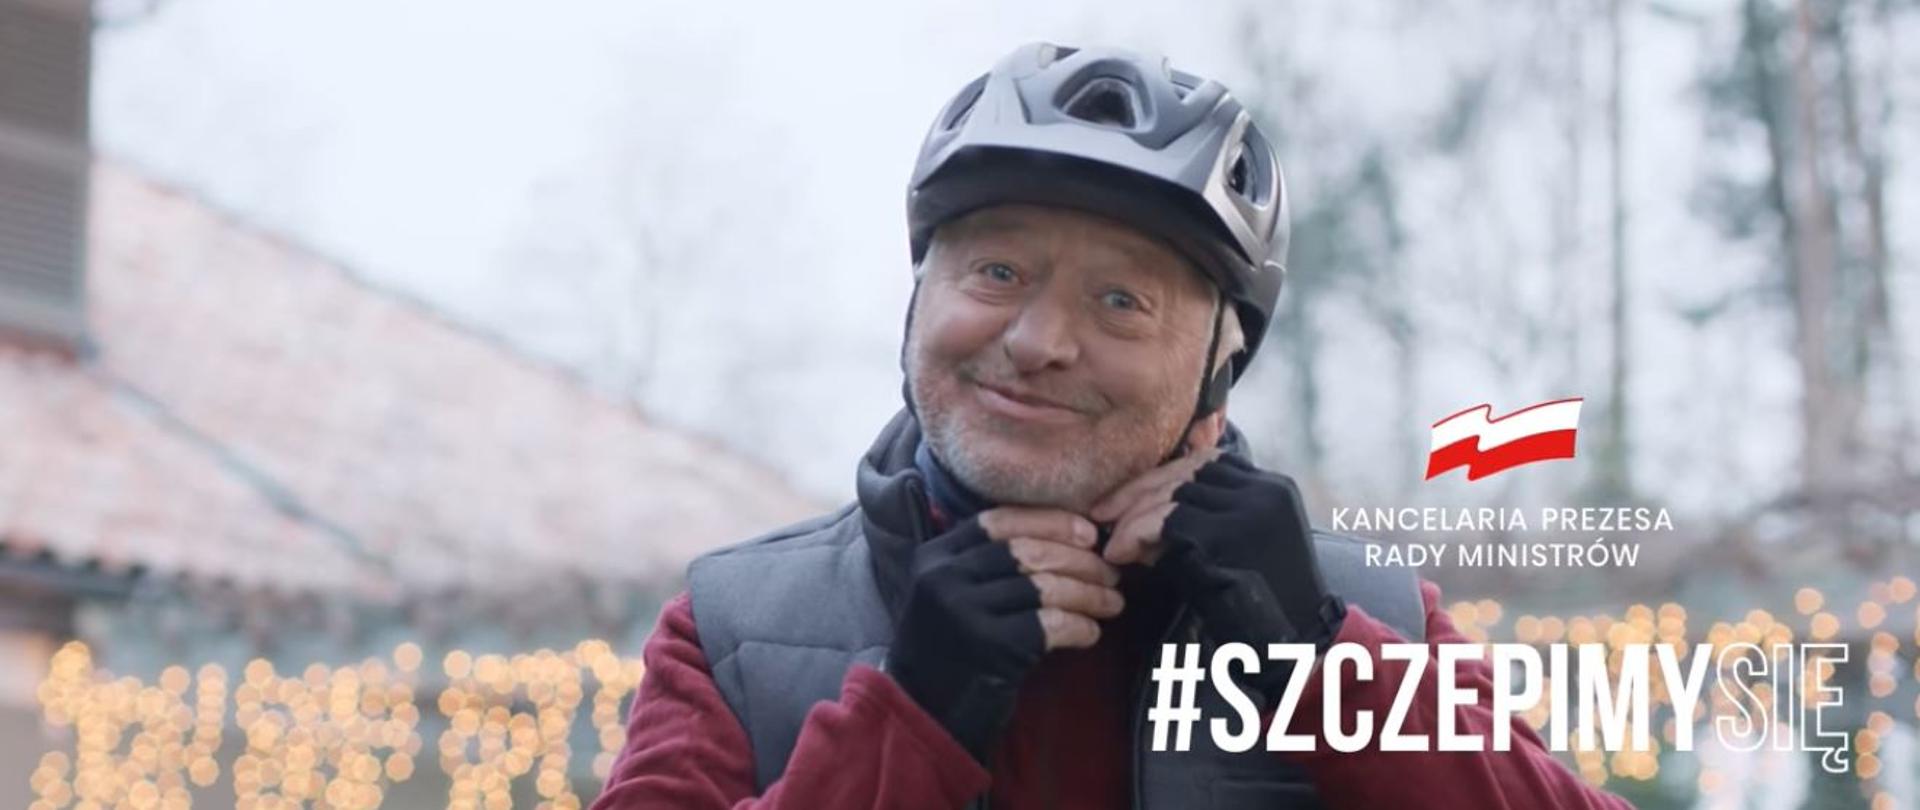 Aktor Stanisław Banasiuk promuje akcję #SzczepimySię